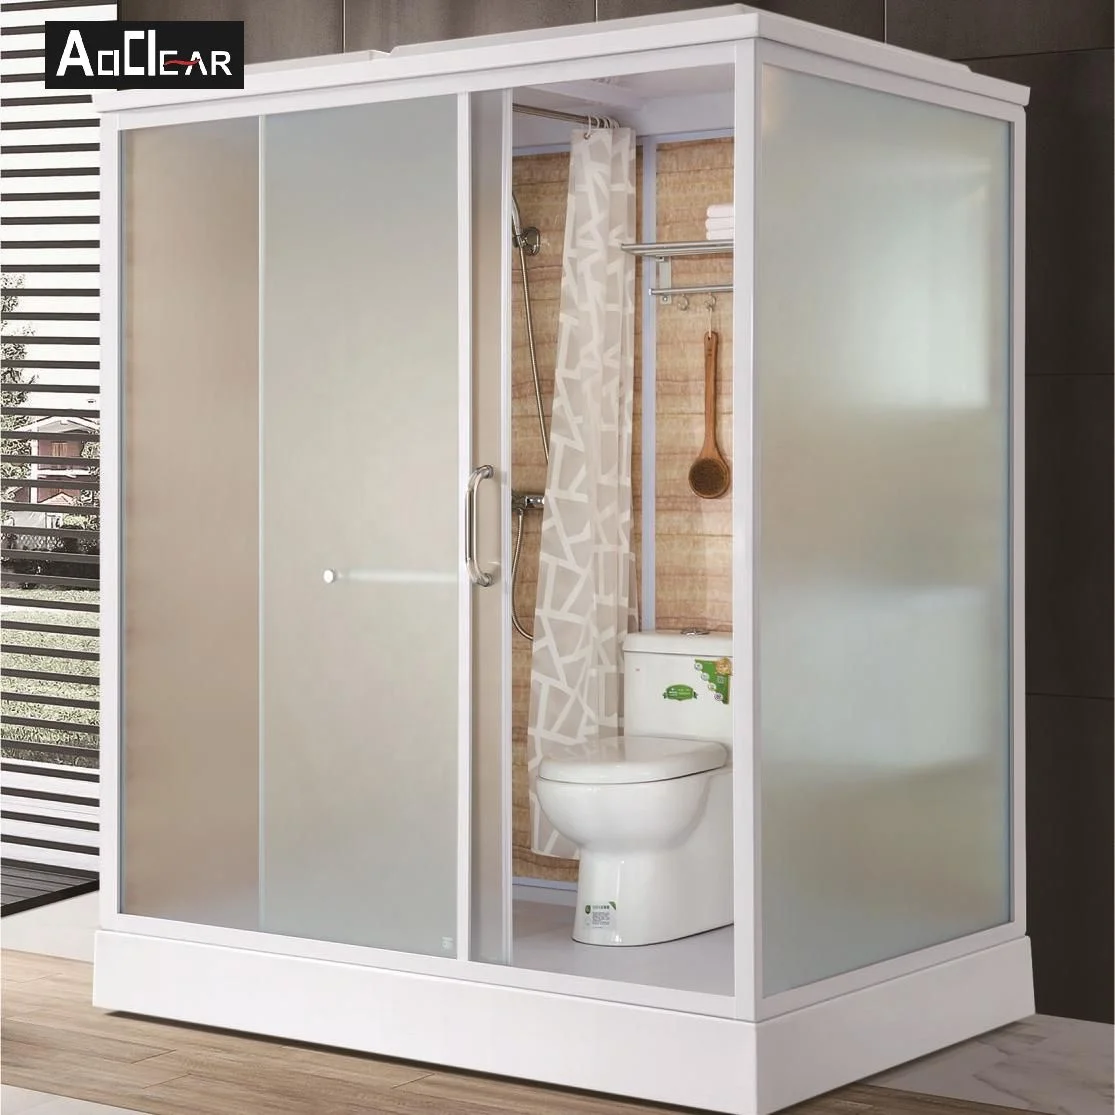 Aokeliya portable all in one shower toilet unit prefab room with pod modular bathroom